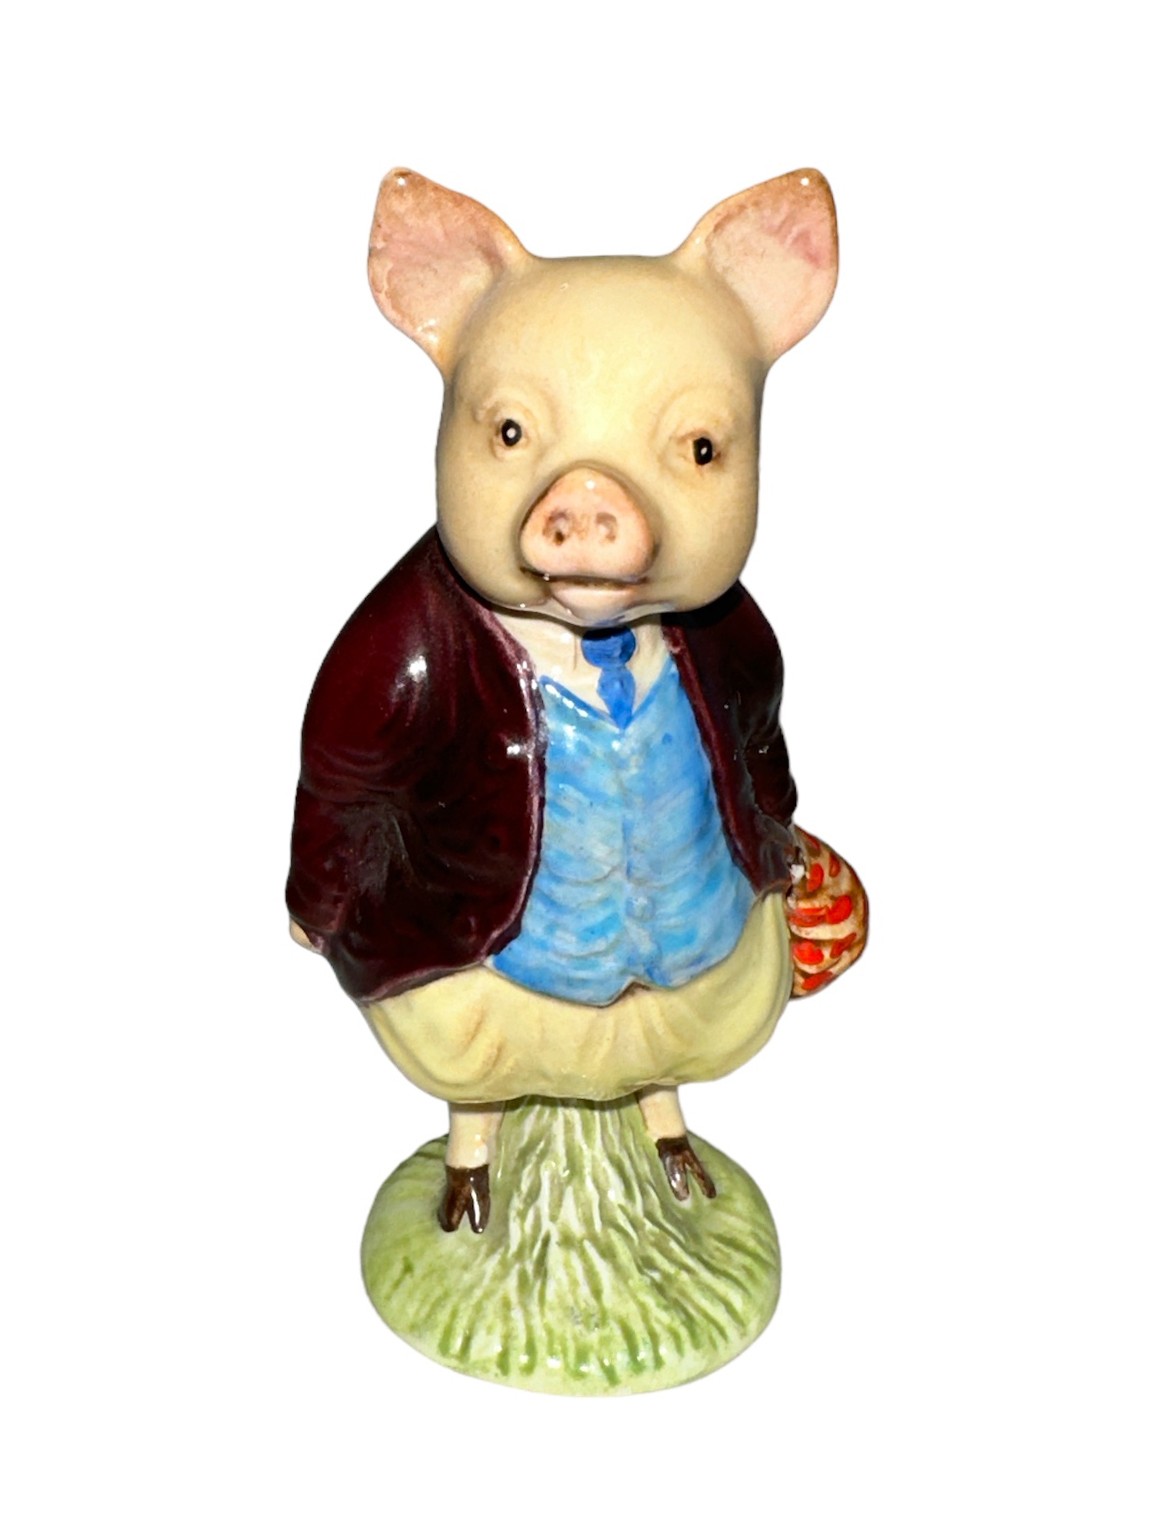 Beswick Pigling Bland figure